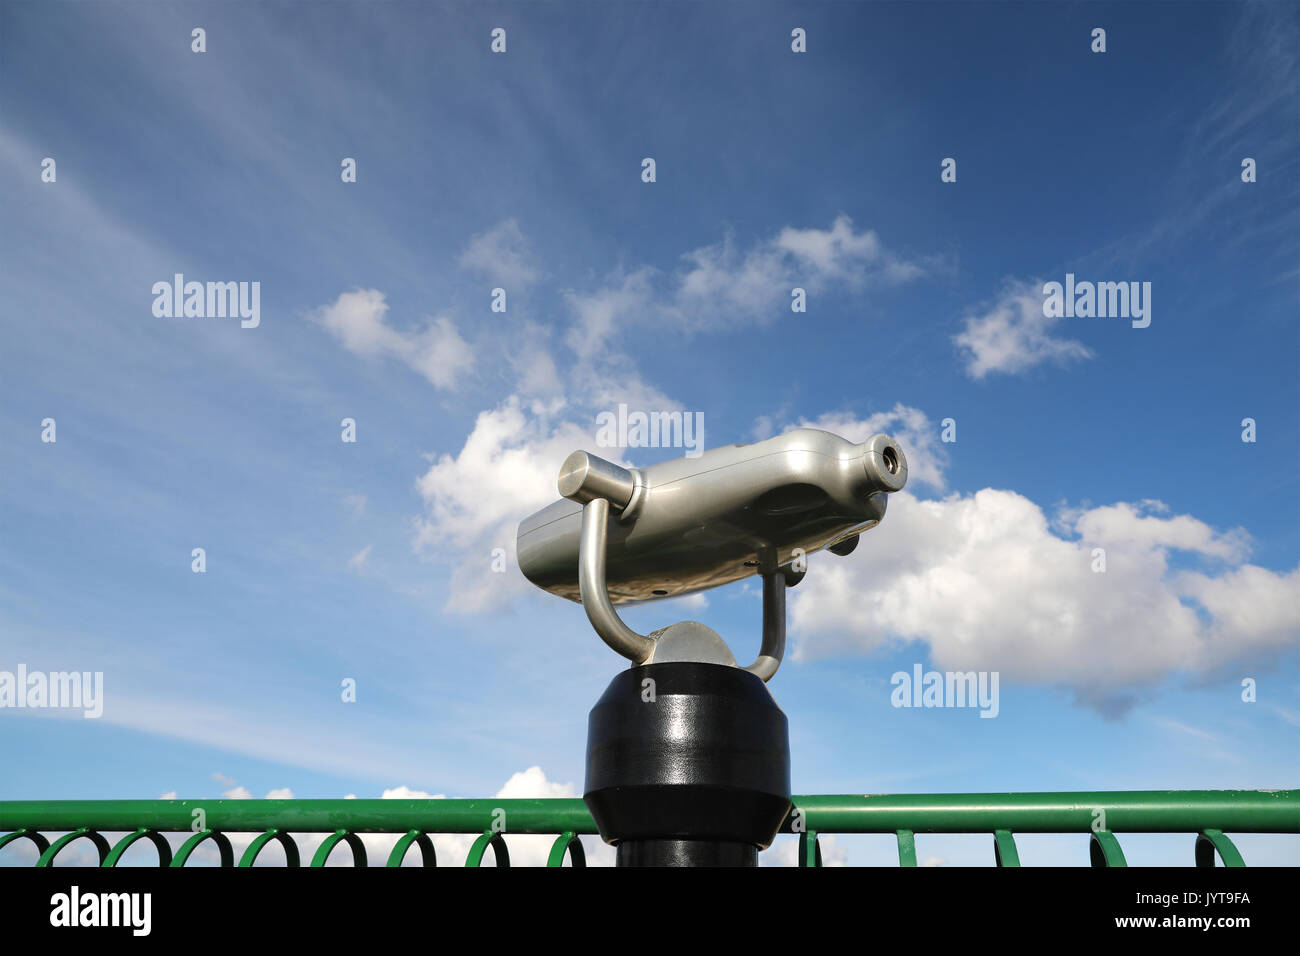 Münz-spy anzeigen Maschine gegen bewölkter Himmel Stockfoto